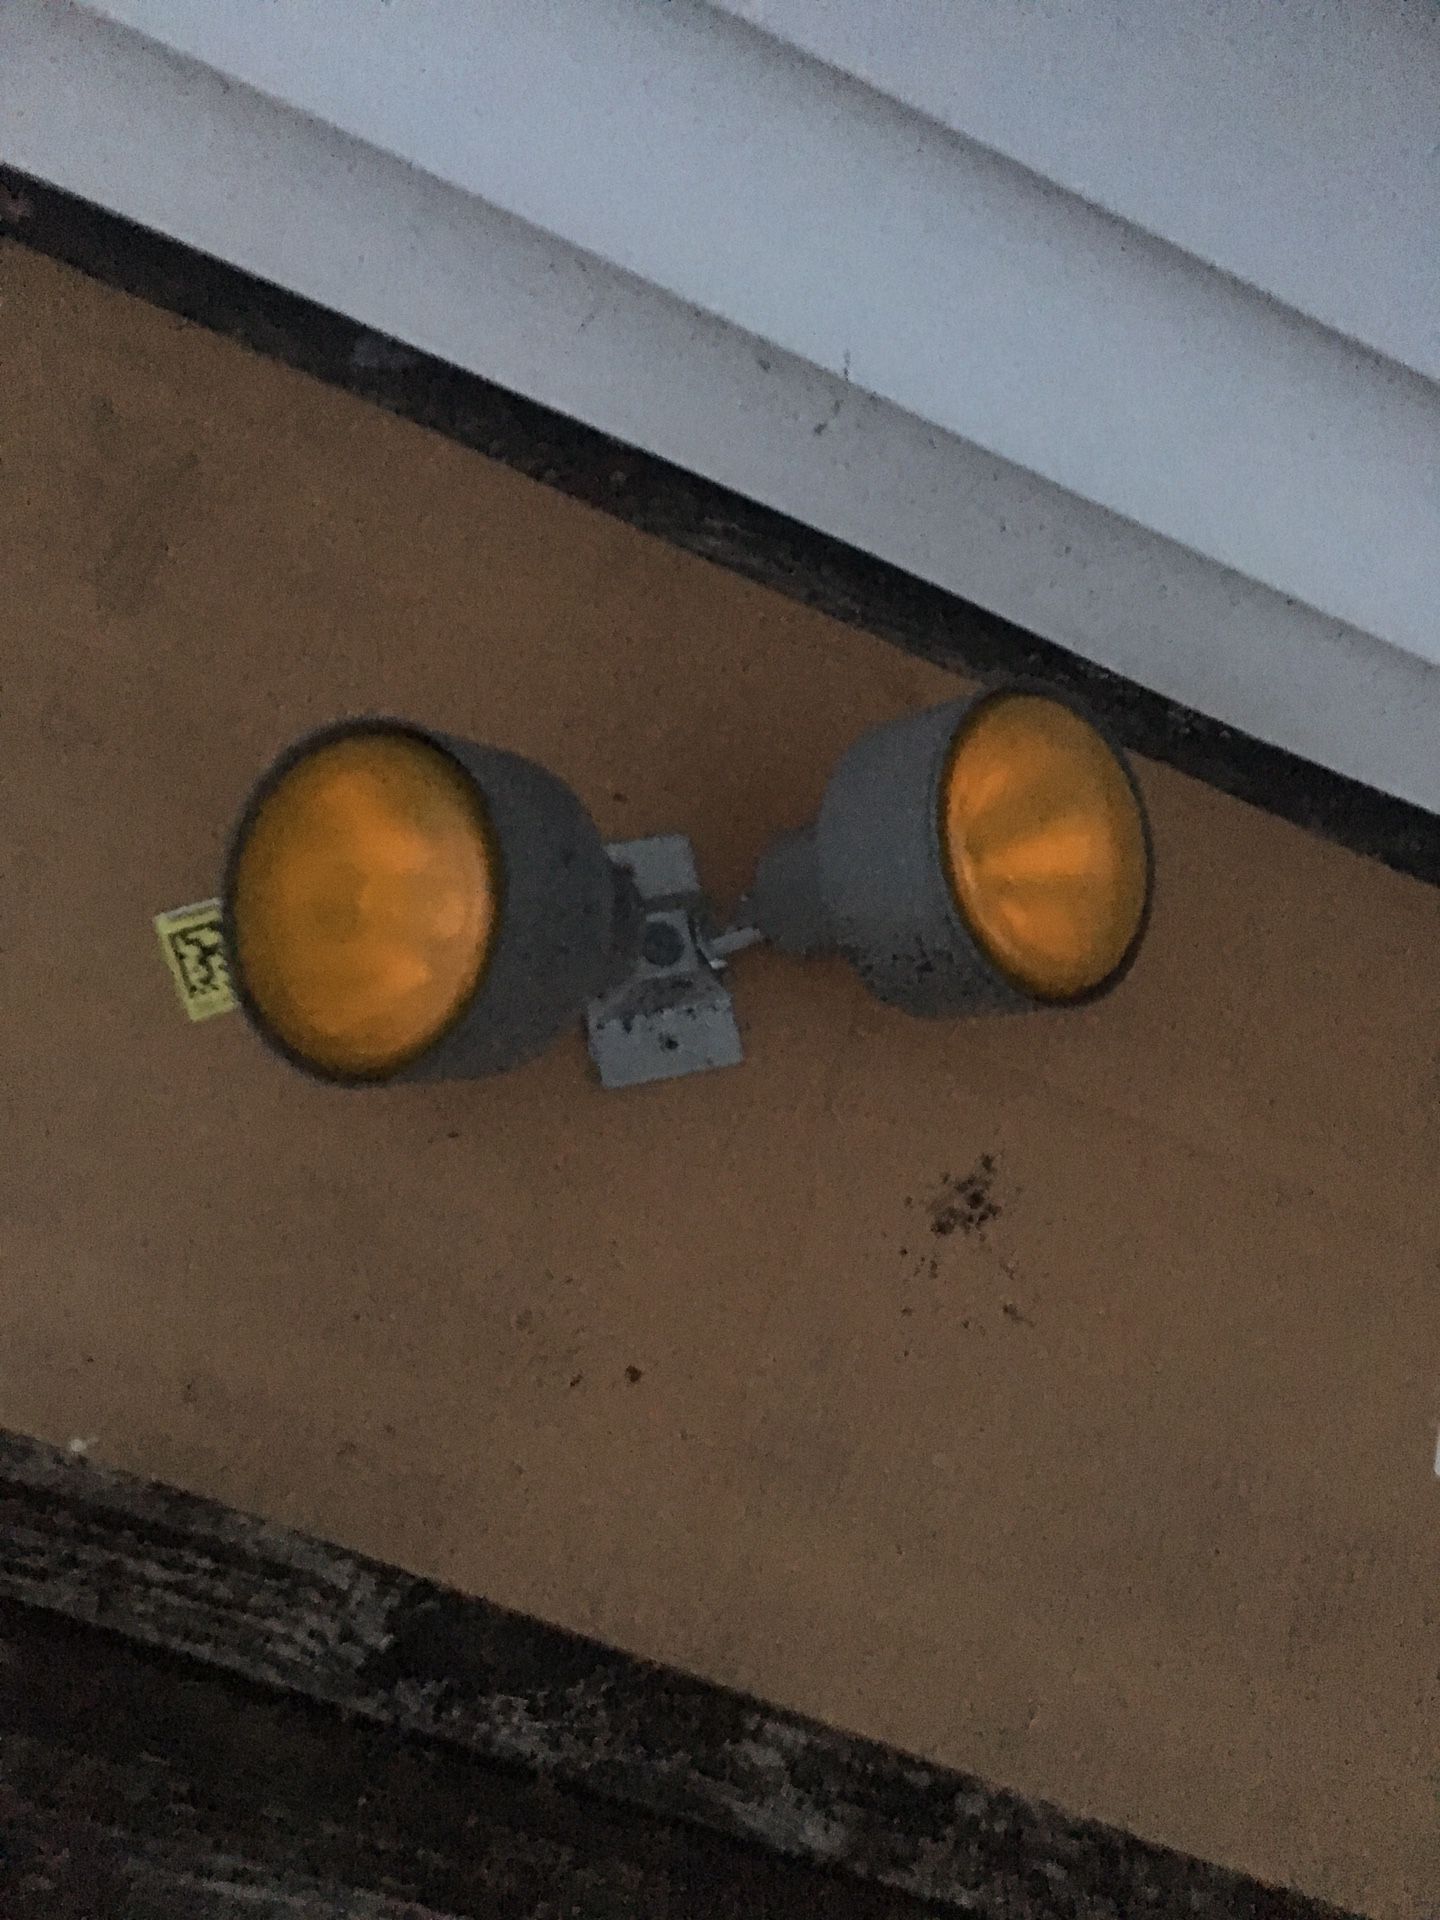 Outdoor lamp light fixture - bulbs work